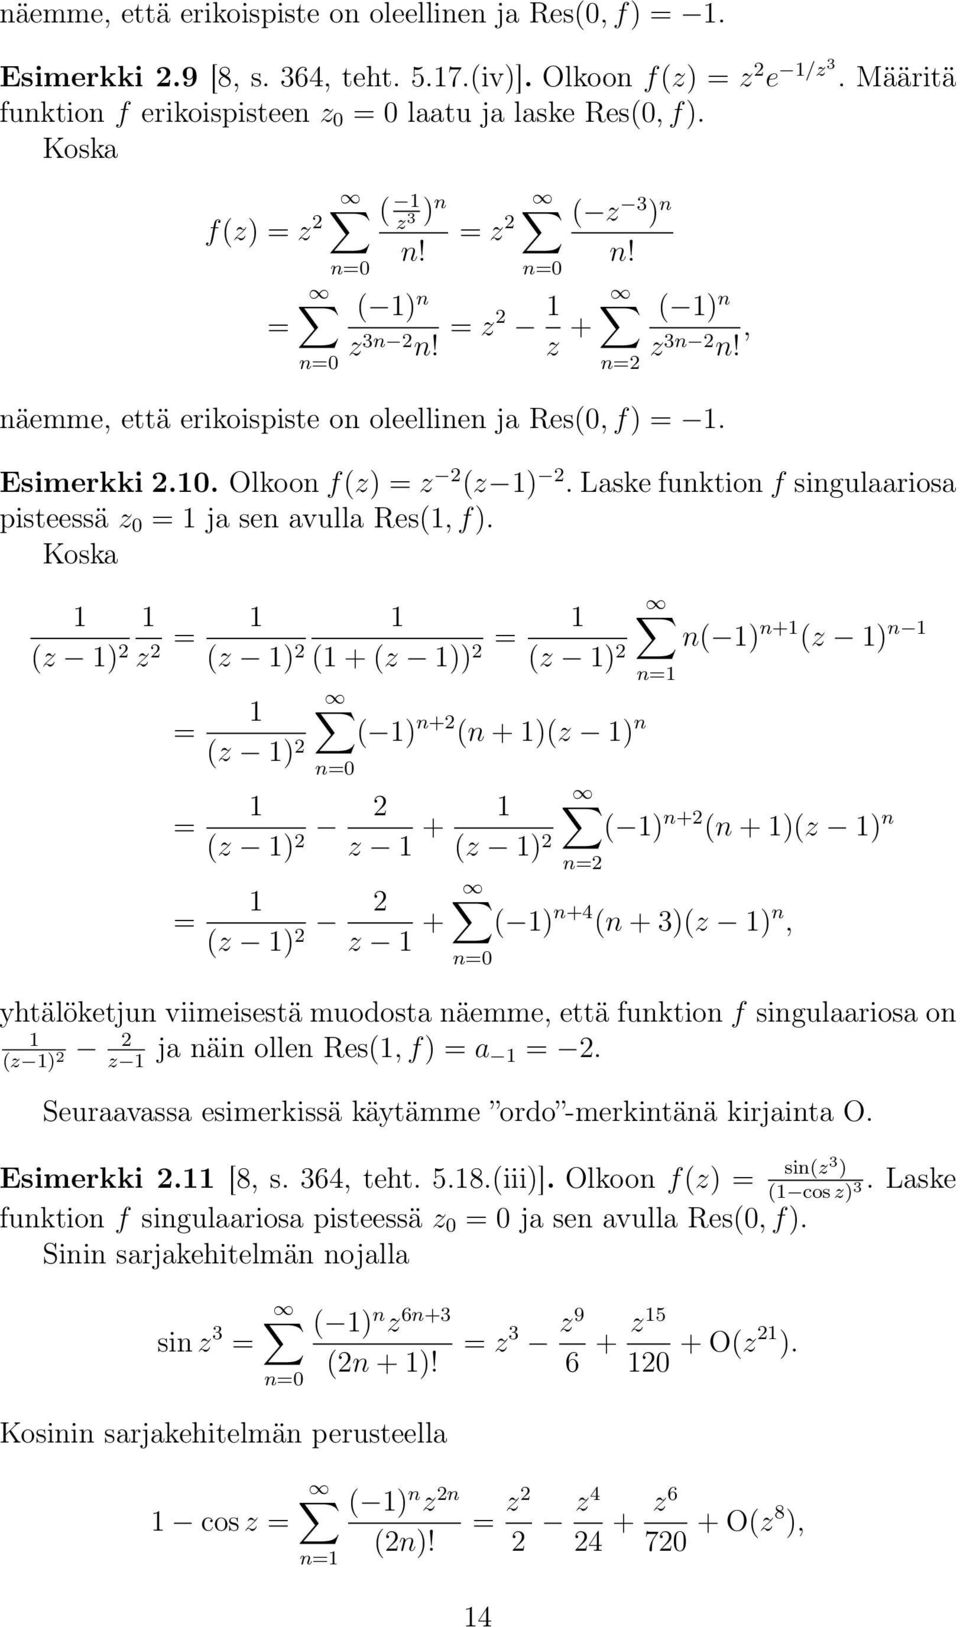 Laske funktion f singulaariosa pisteessä z = ja sen avulla Res(, f).